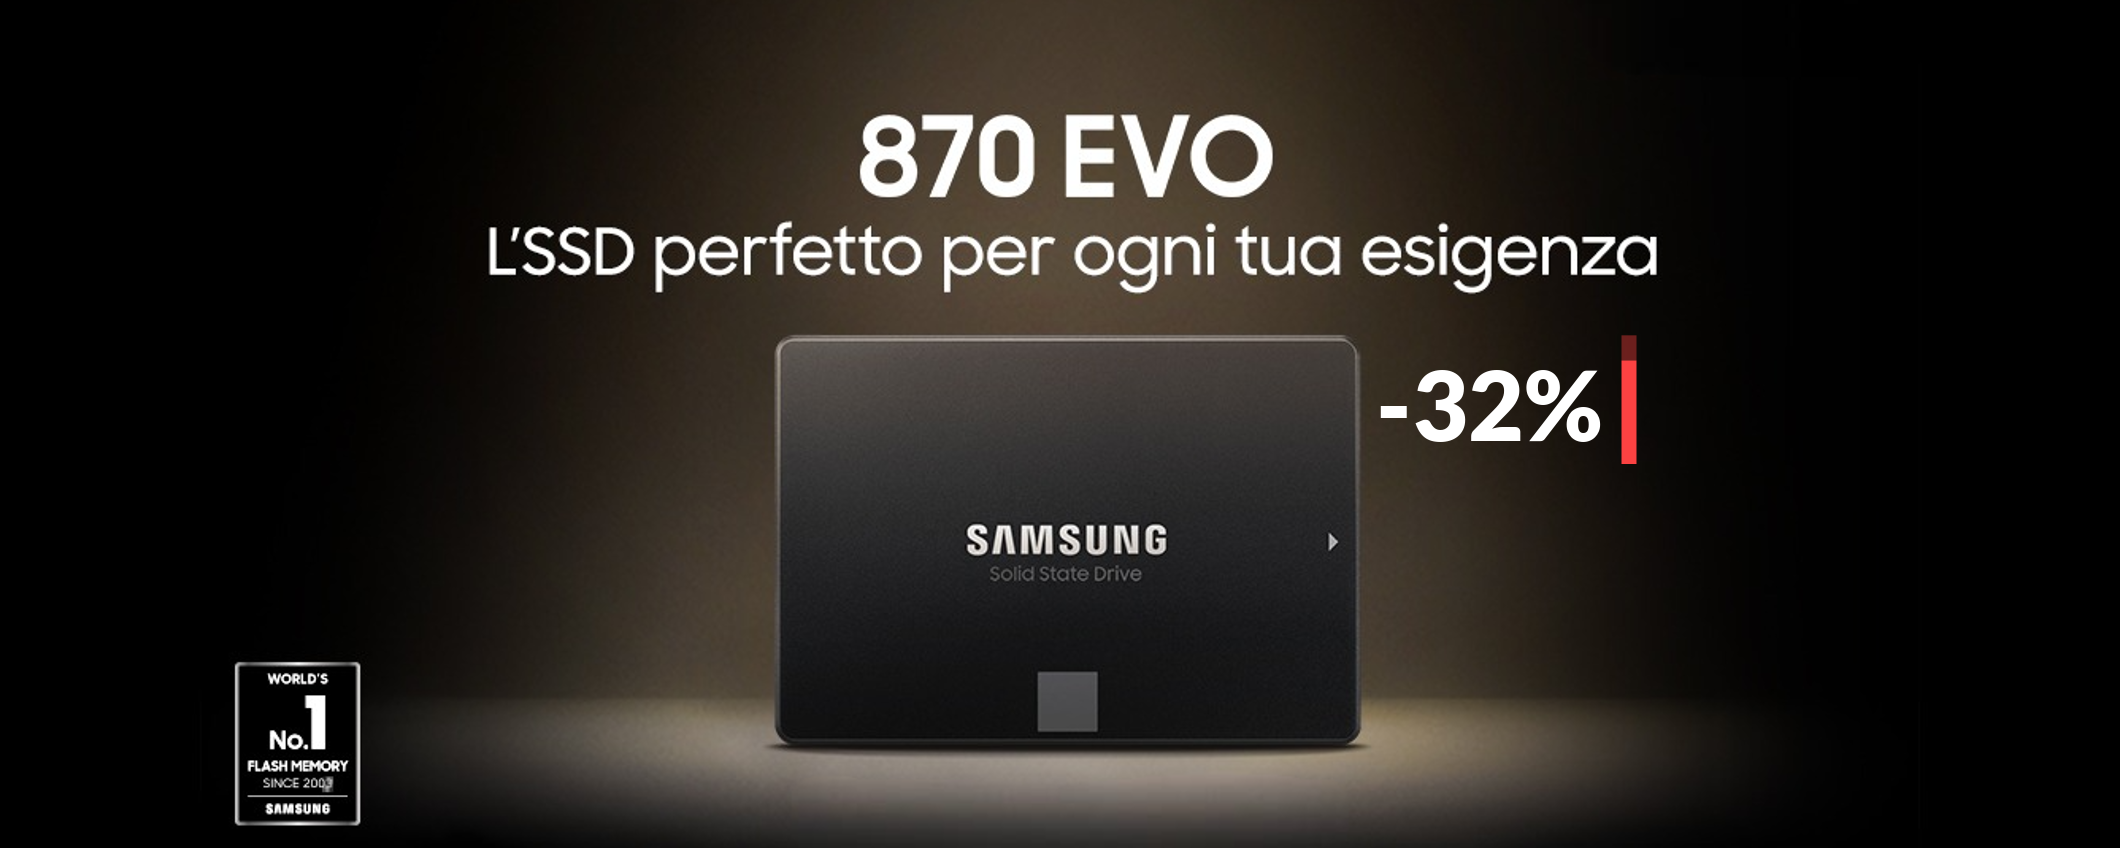 1TB di spazio in più con questo velocissimo SSD Samsung (-32%)